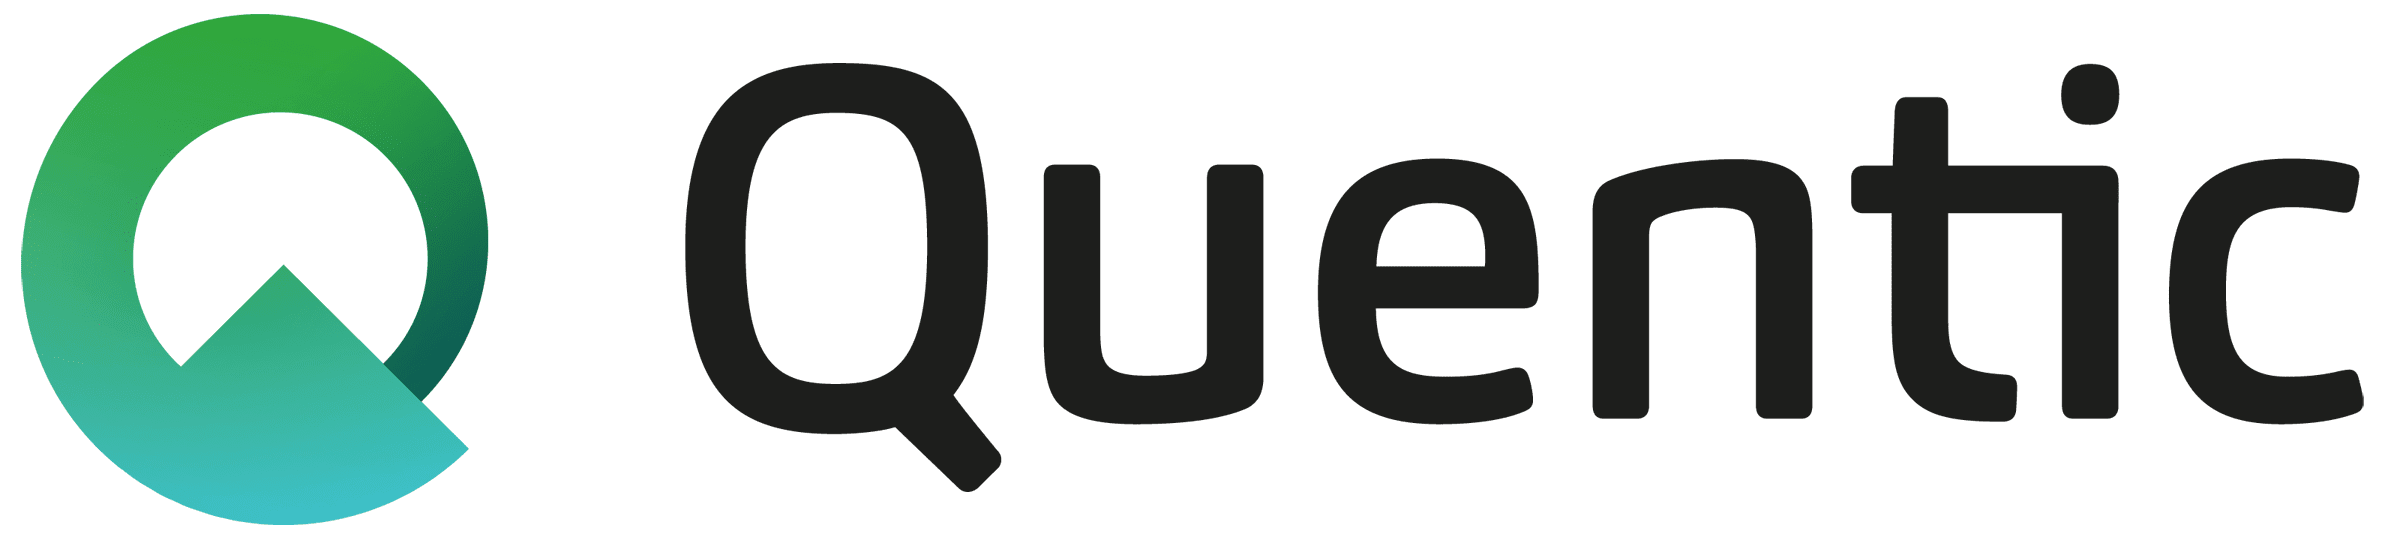 Quentic + logo